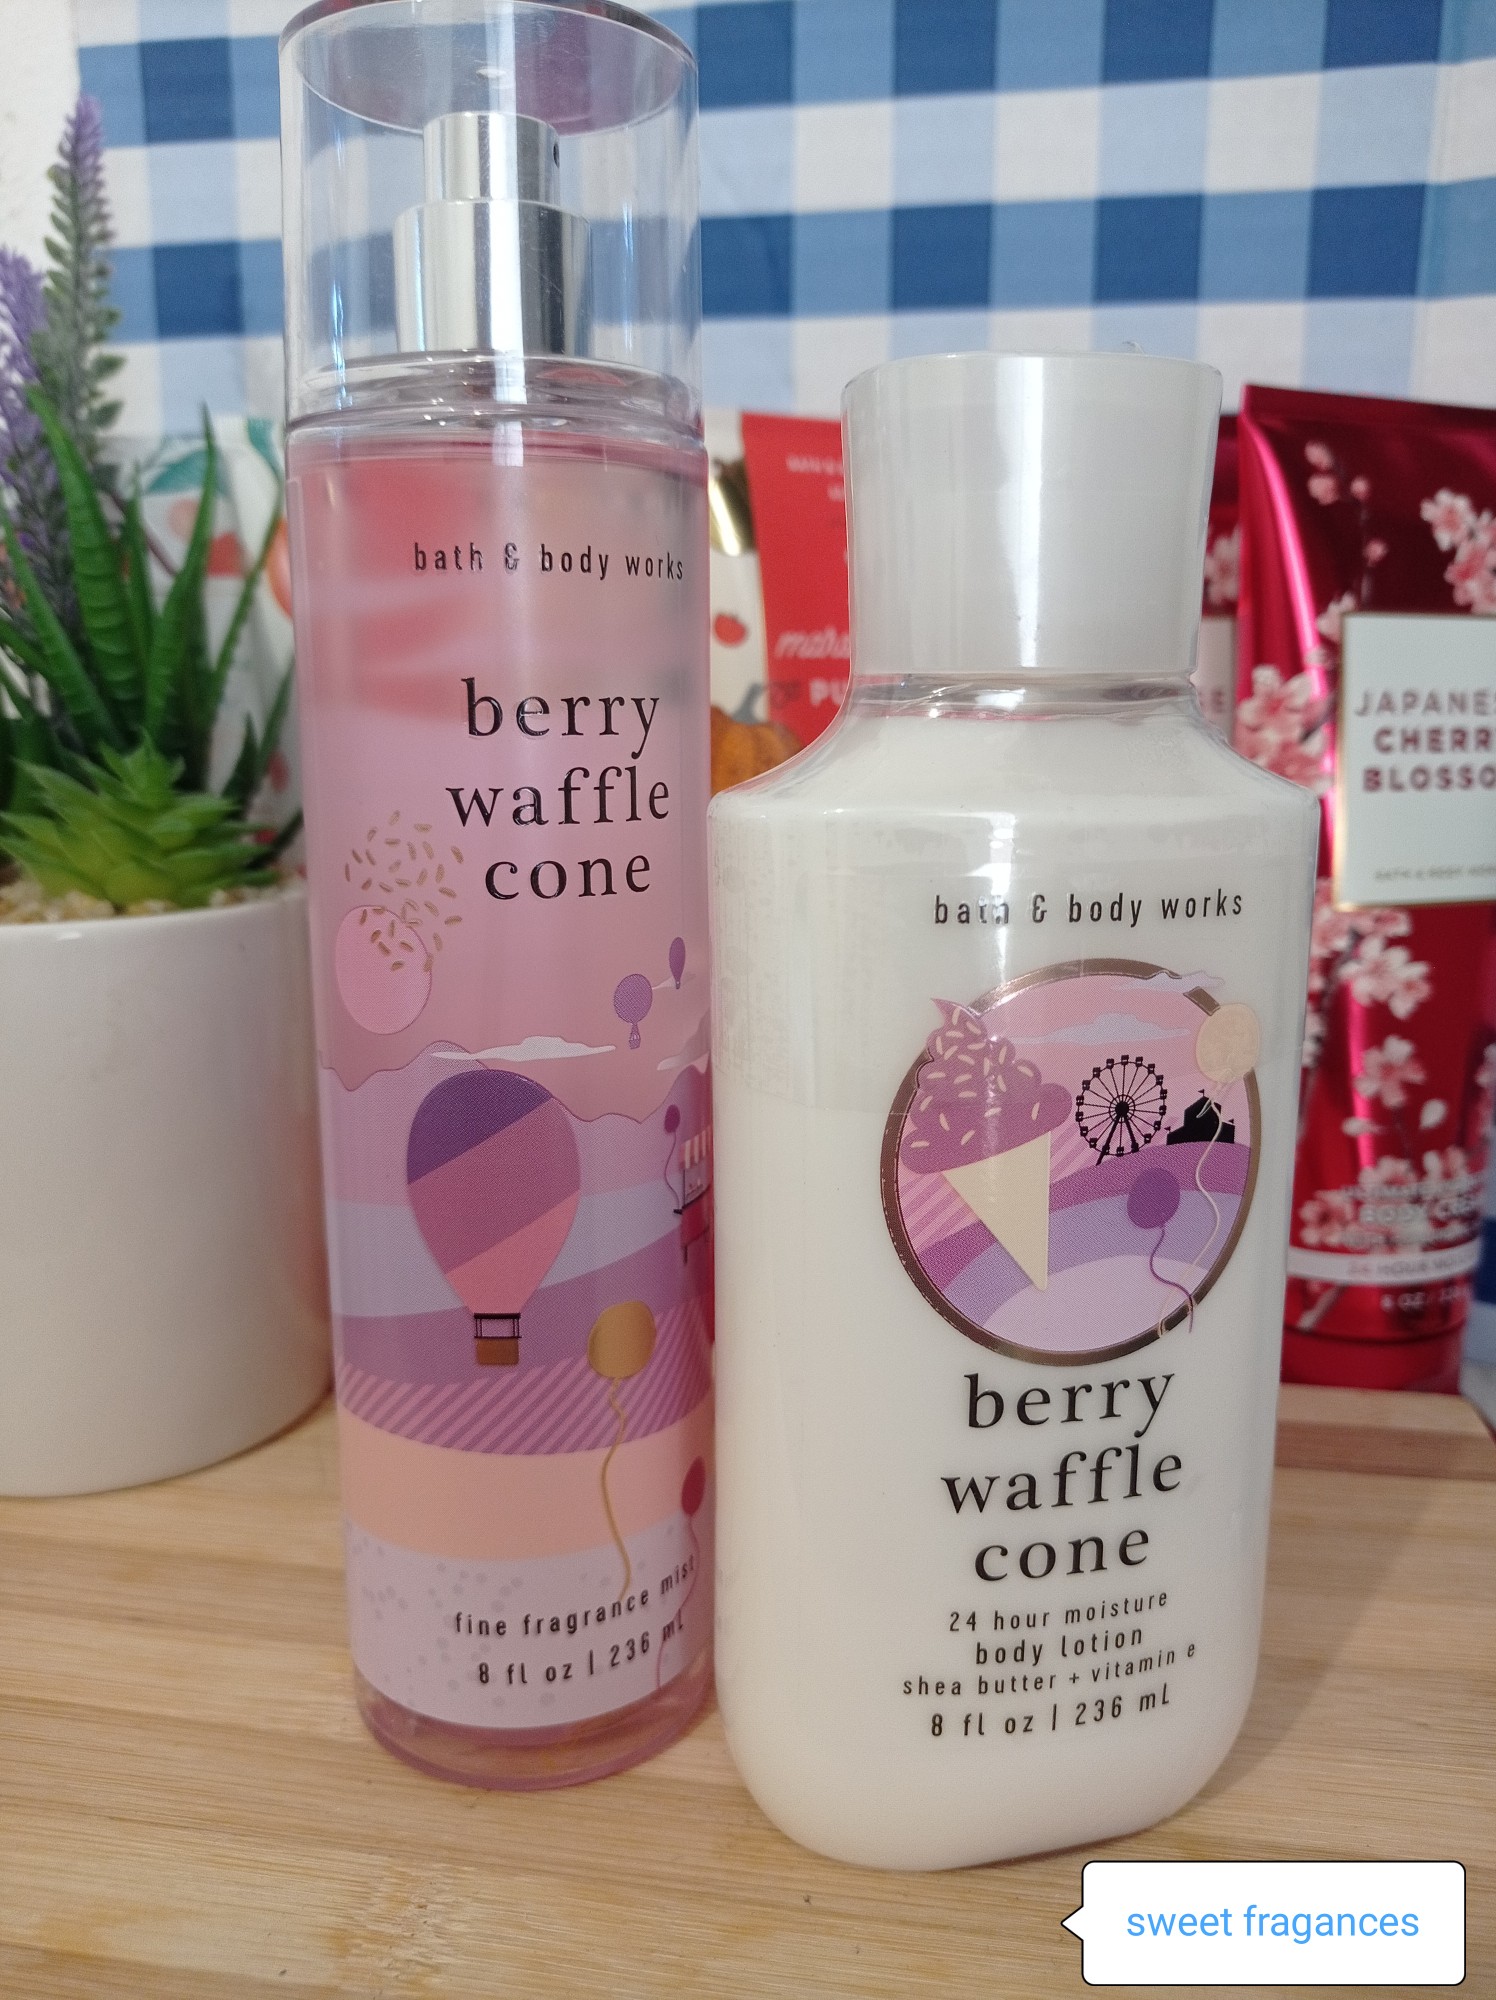 salud y belleza - Berry waffle cone colonia y crema disponibles